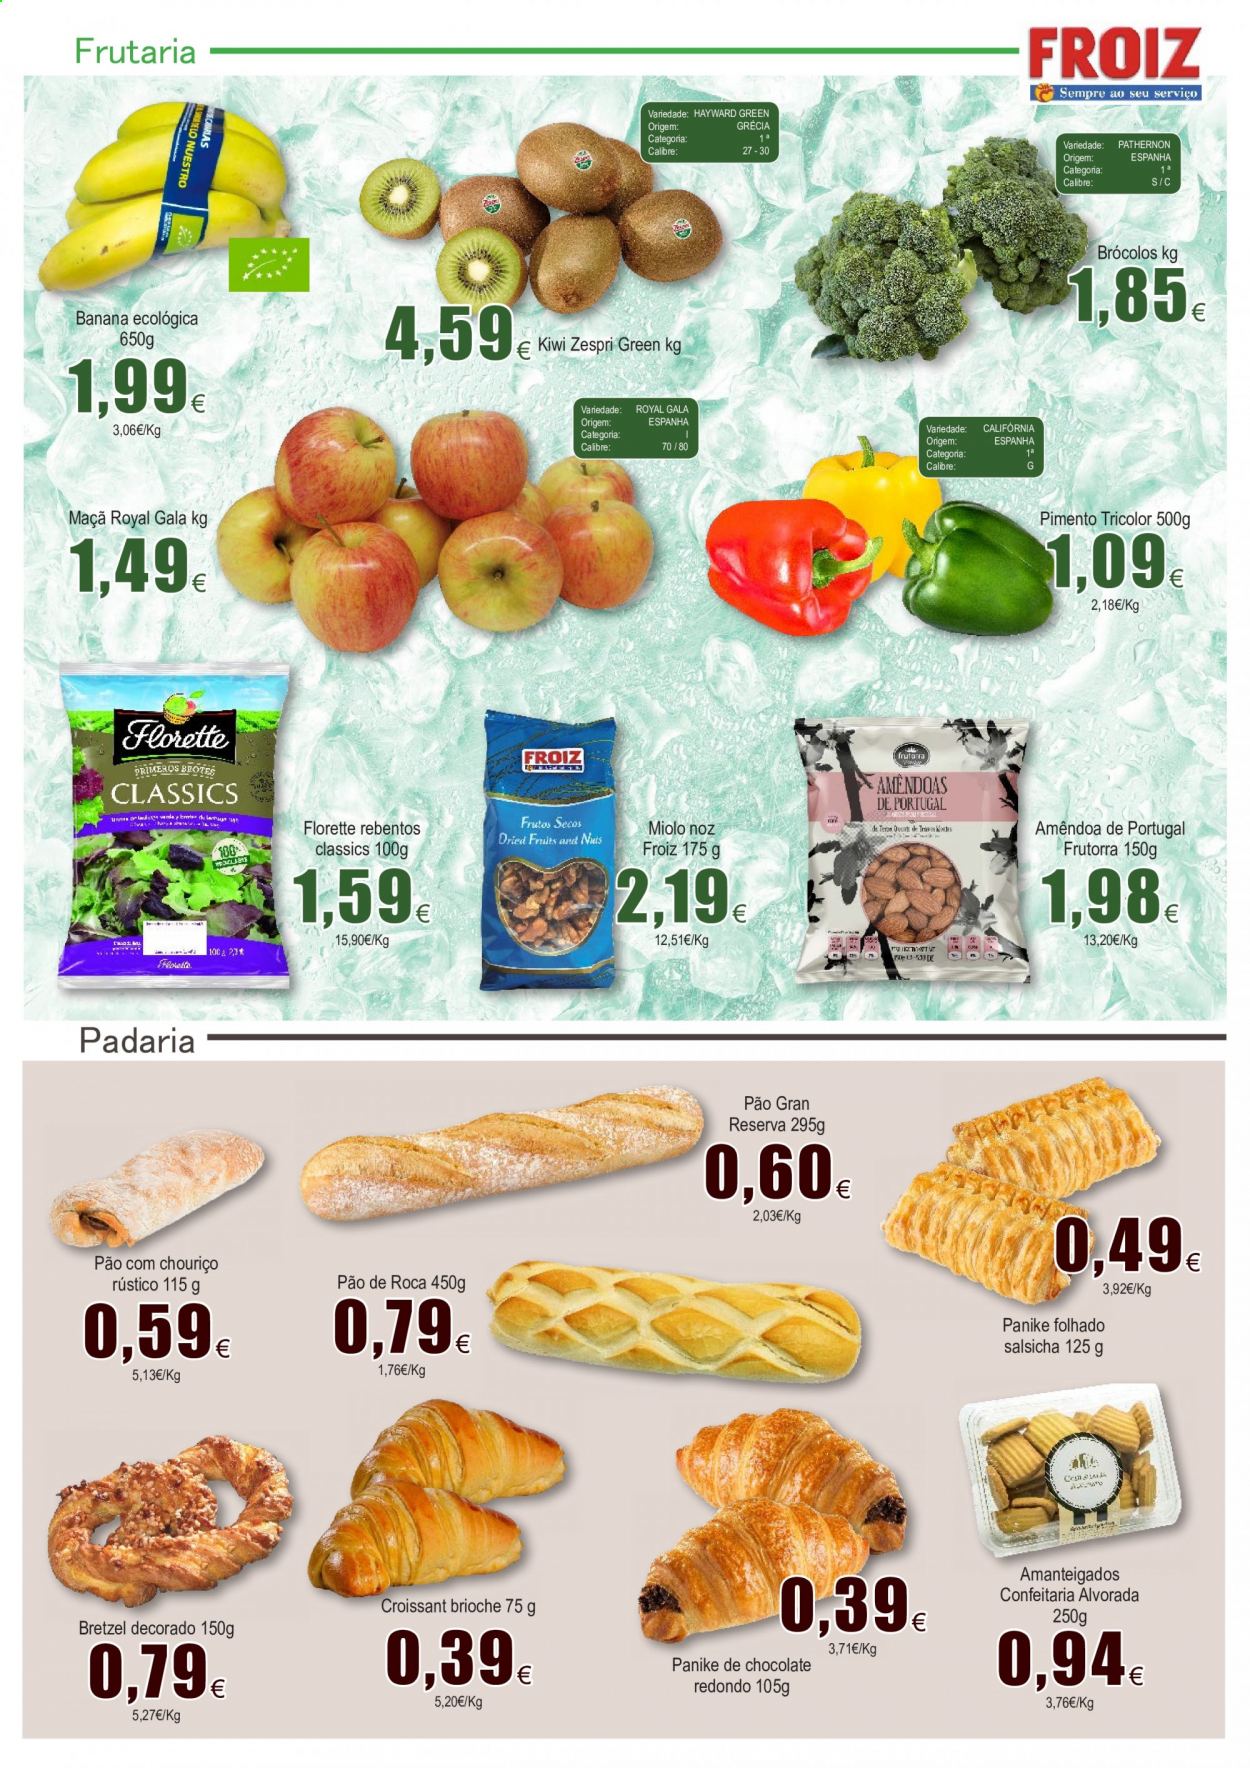 thumbnail - Folheto Froiz - 11.2.2021 - 3.3.2021 - Produtos em promoção - banana, maçã, kiwi, pão, pretzels, brioche, croissant, salsicha, amêndoa. Página 2.